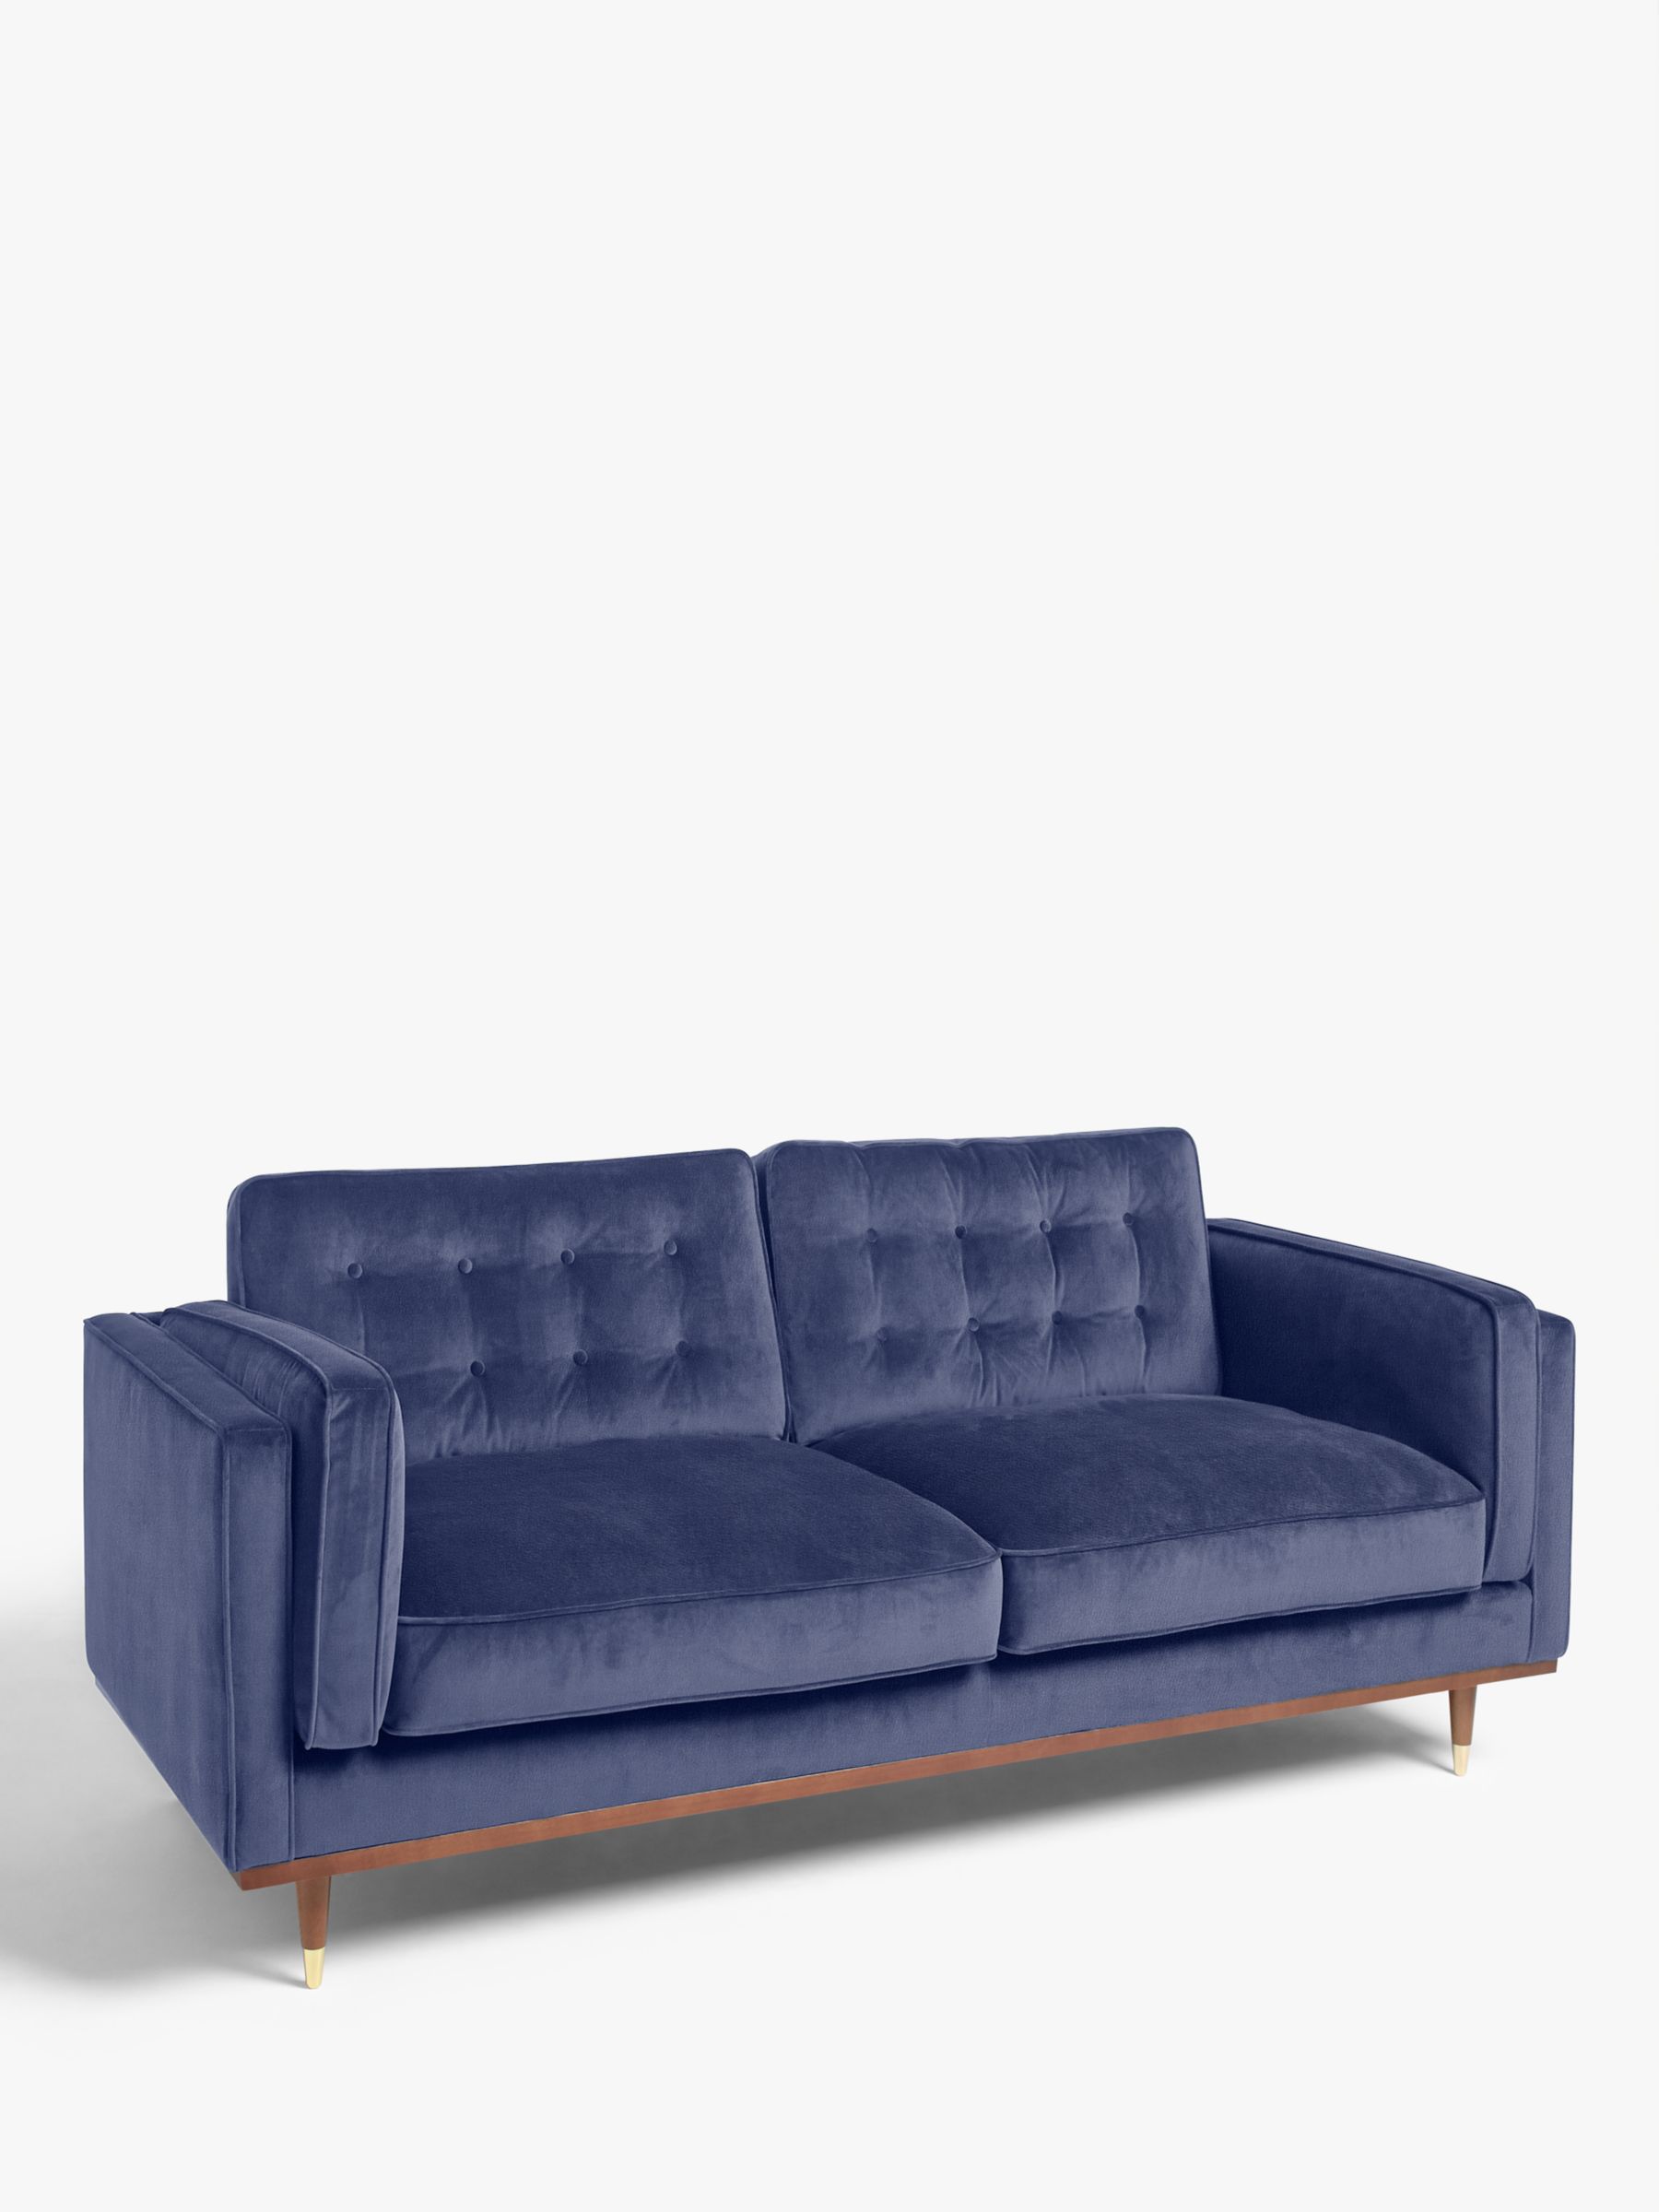 Photo of John lewis + swoon lyon medium 2 seater sofa